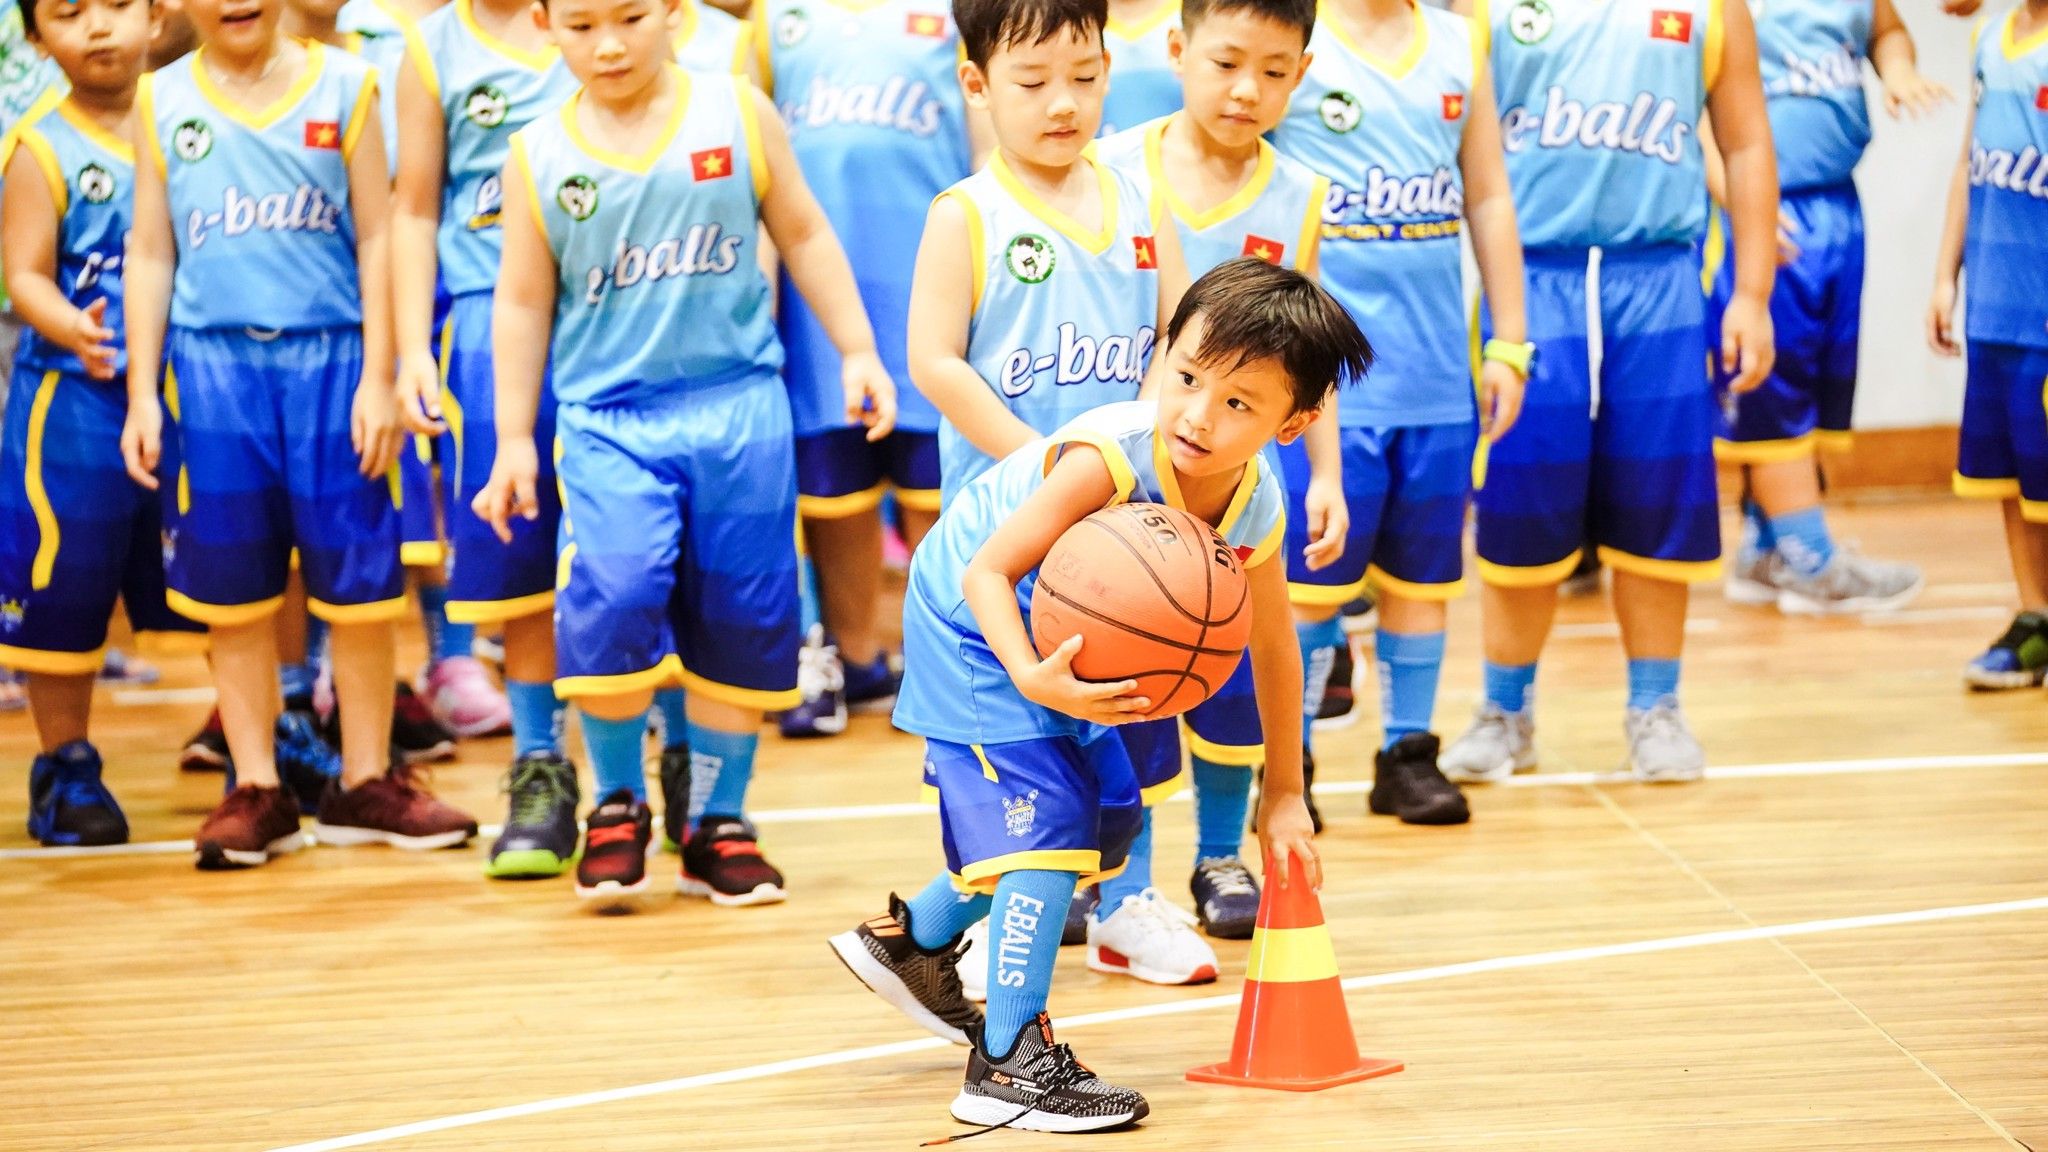 trung tâm đào tạo bóng rổ eballs dành cho trẻ em